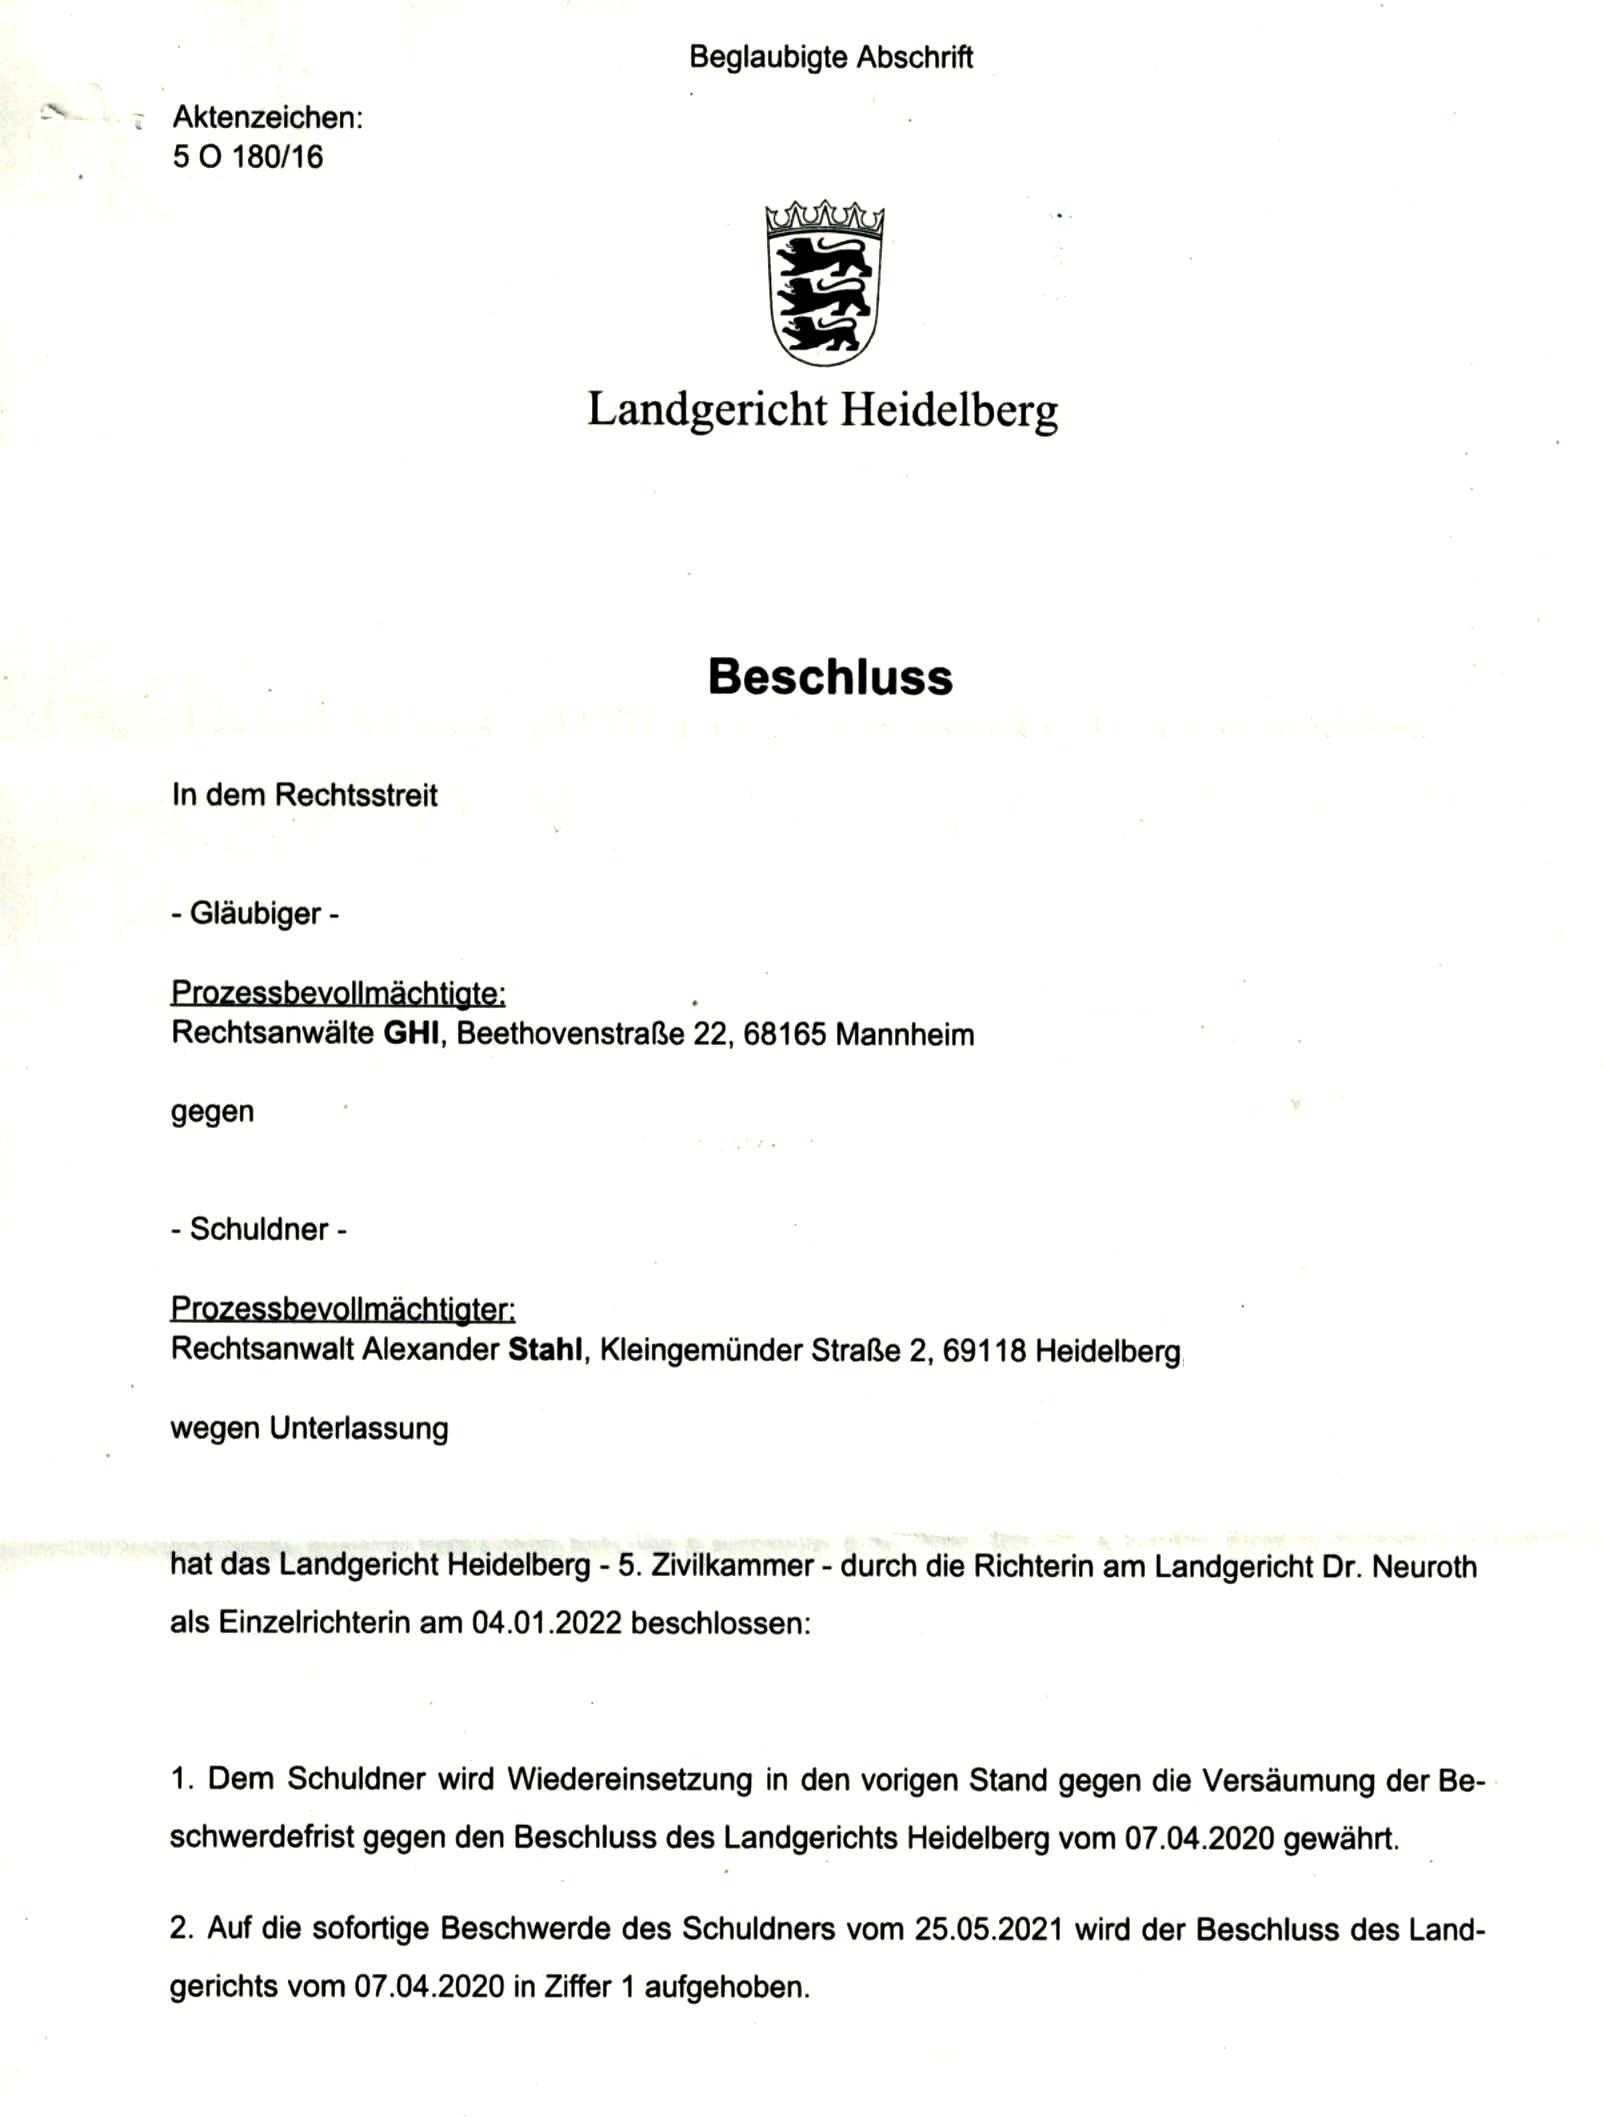 Beschluss 5 O 180/16 des Landgericht Heidelberg vom 05.01.2022, Seite 1